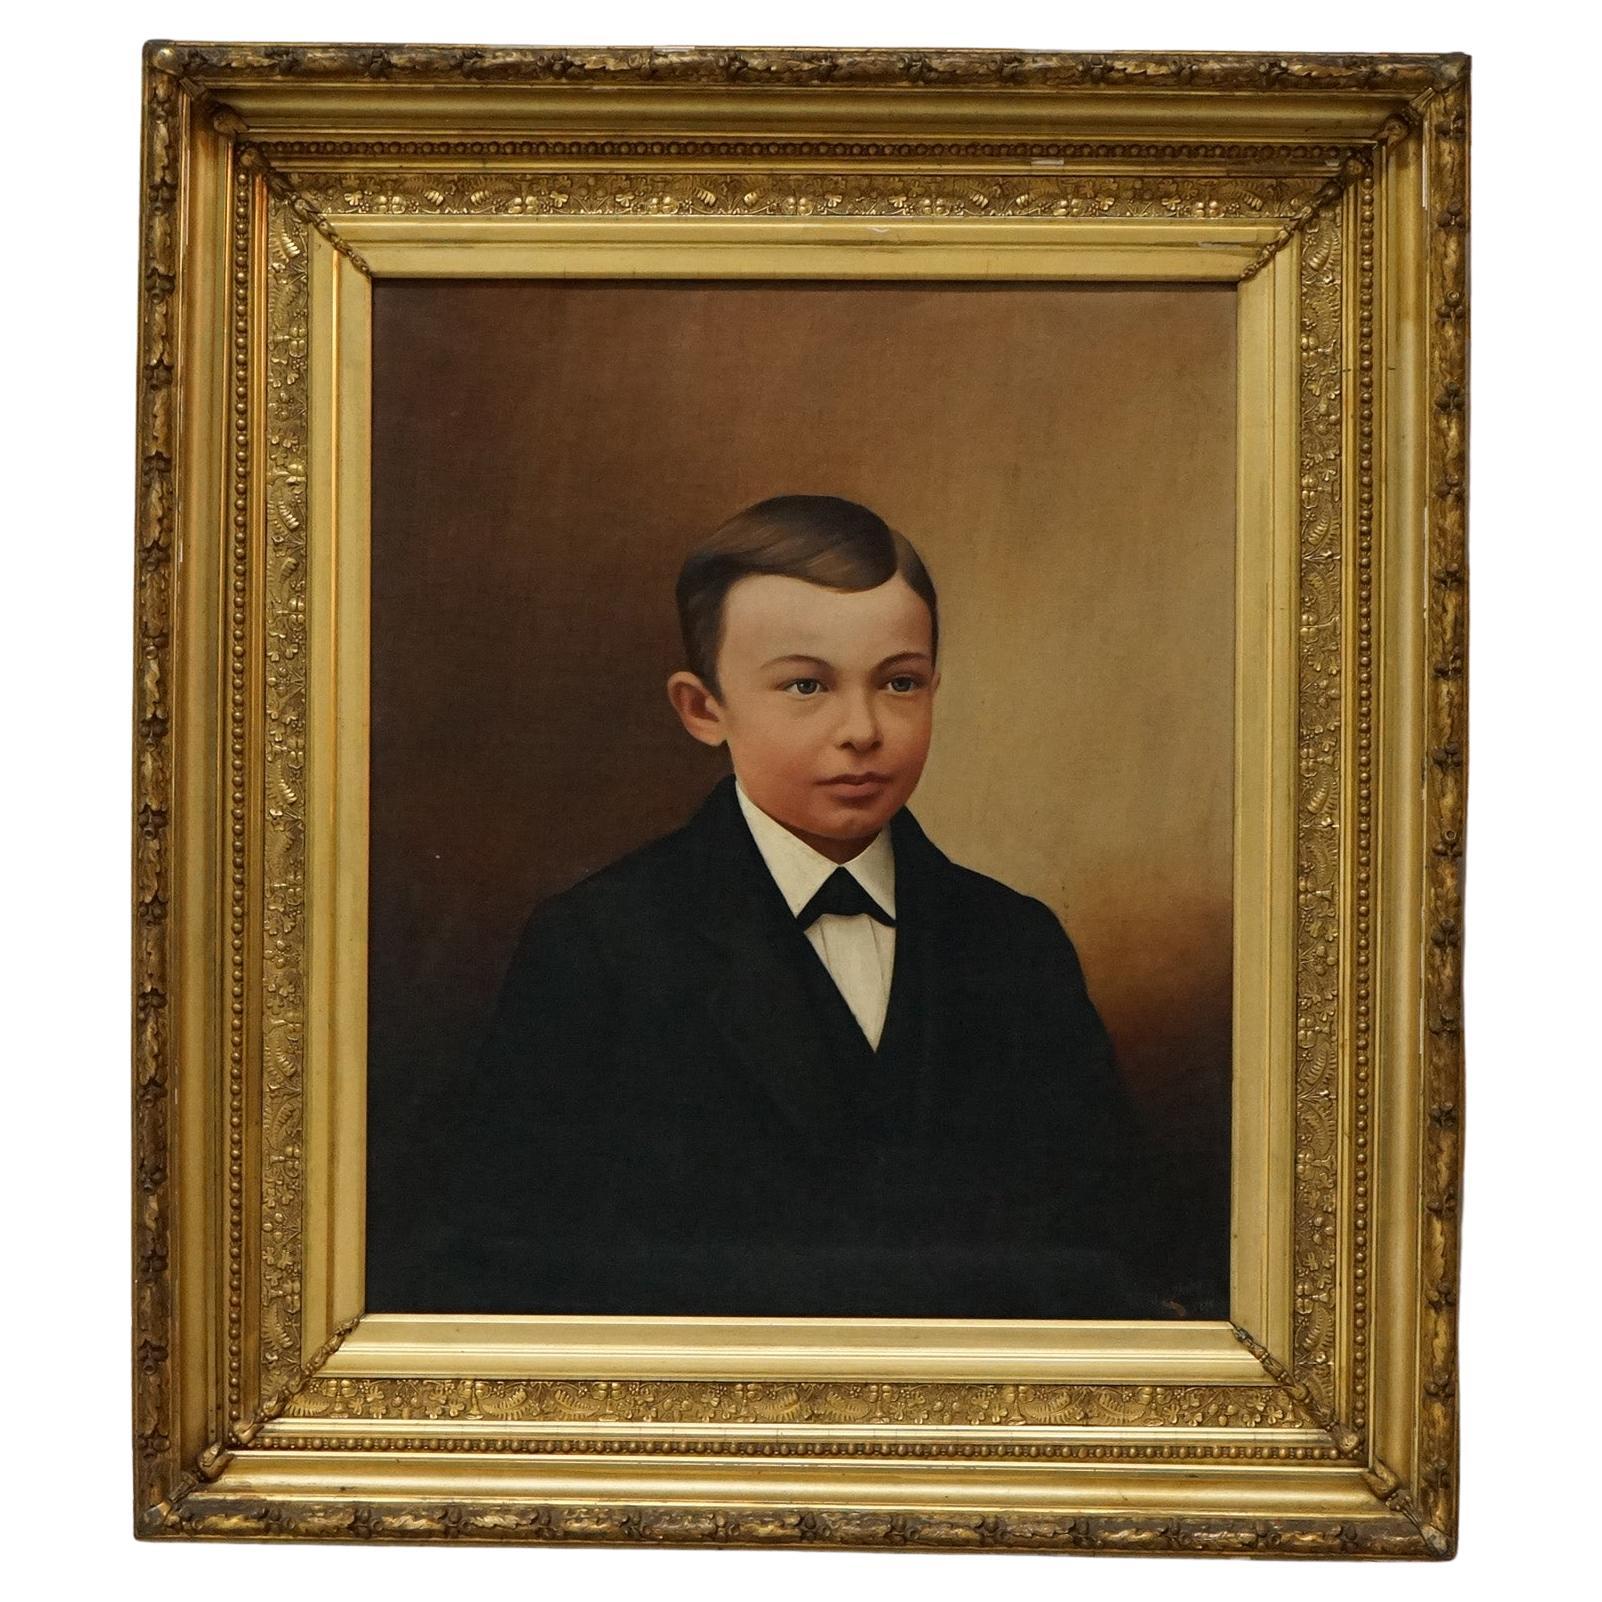 Antikes Ölgemälde, Porträt eines jungen Jungen von S.B. Shiley, um 1880